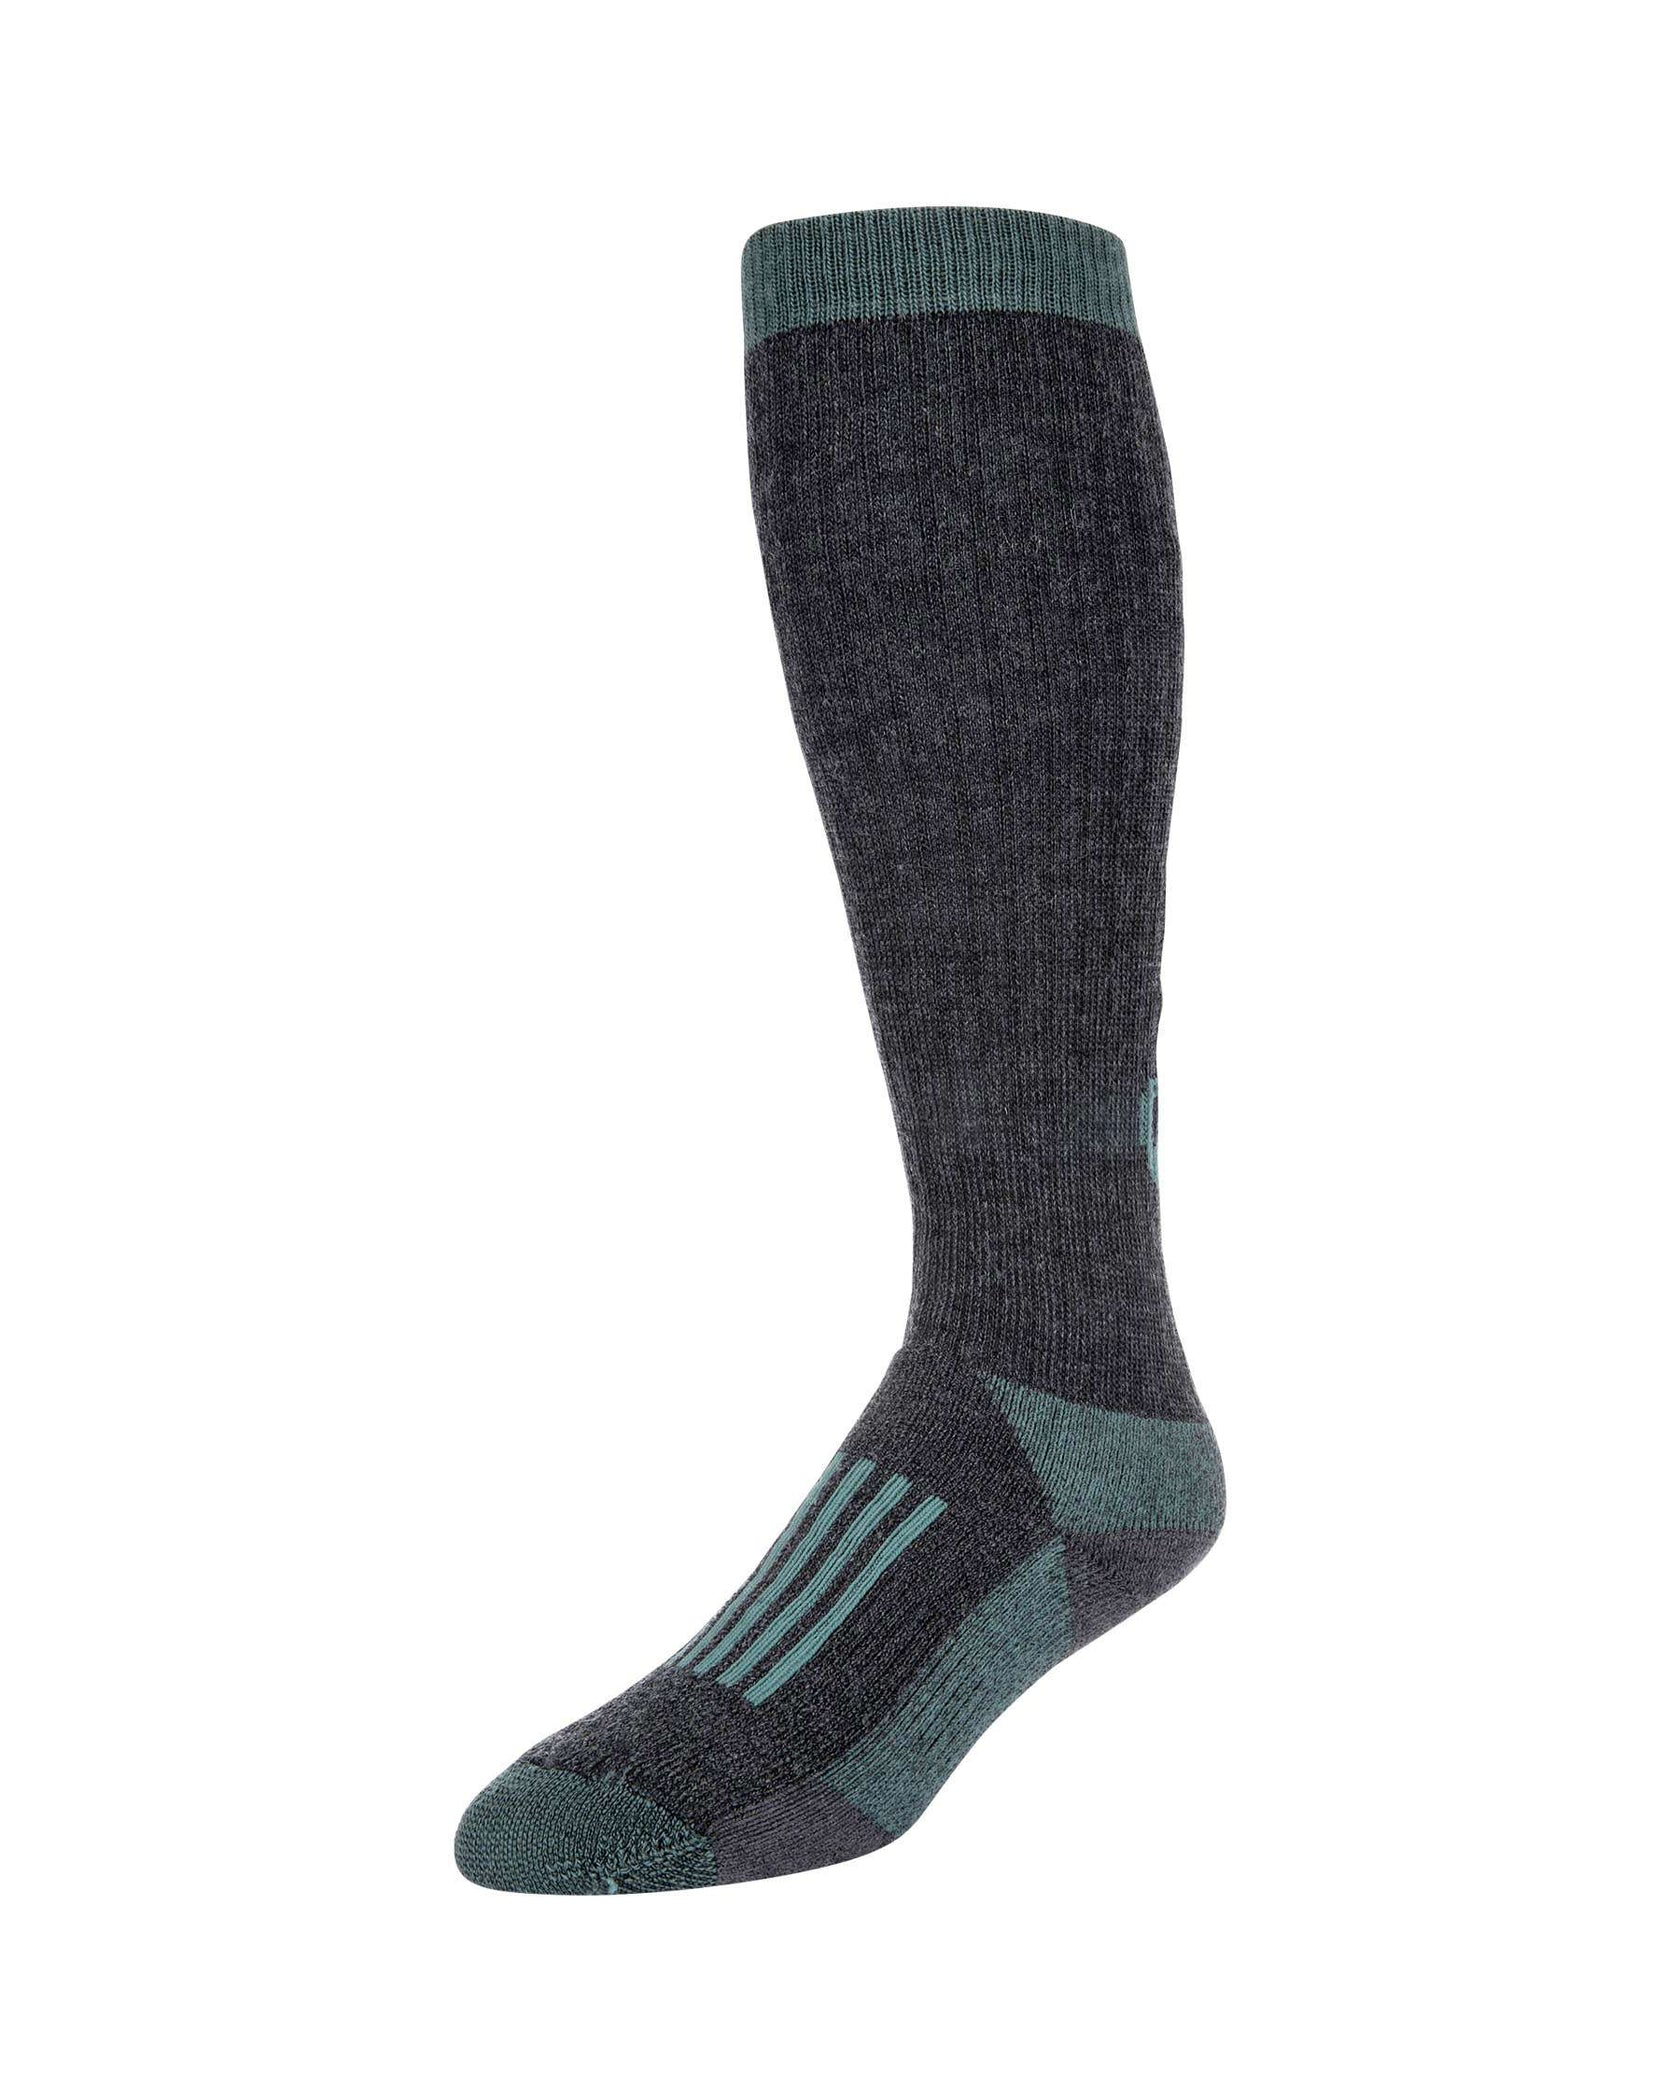 Simms Fishing Women's Merino Thermal OTC Socks